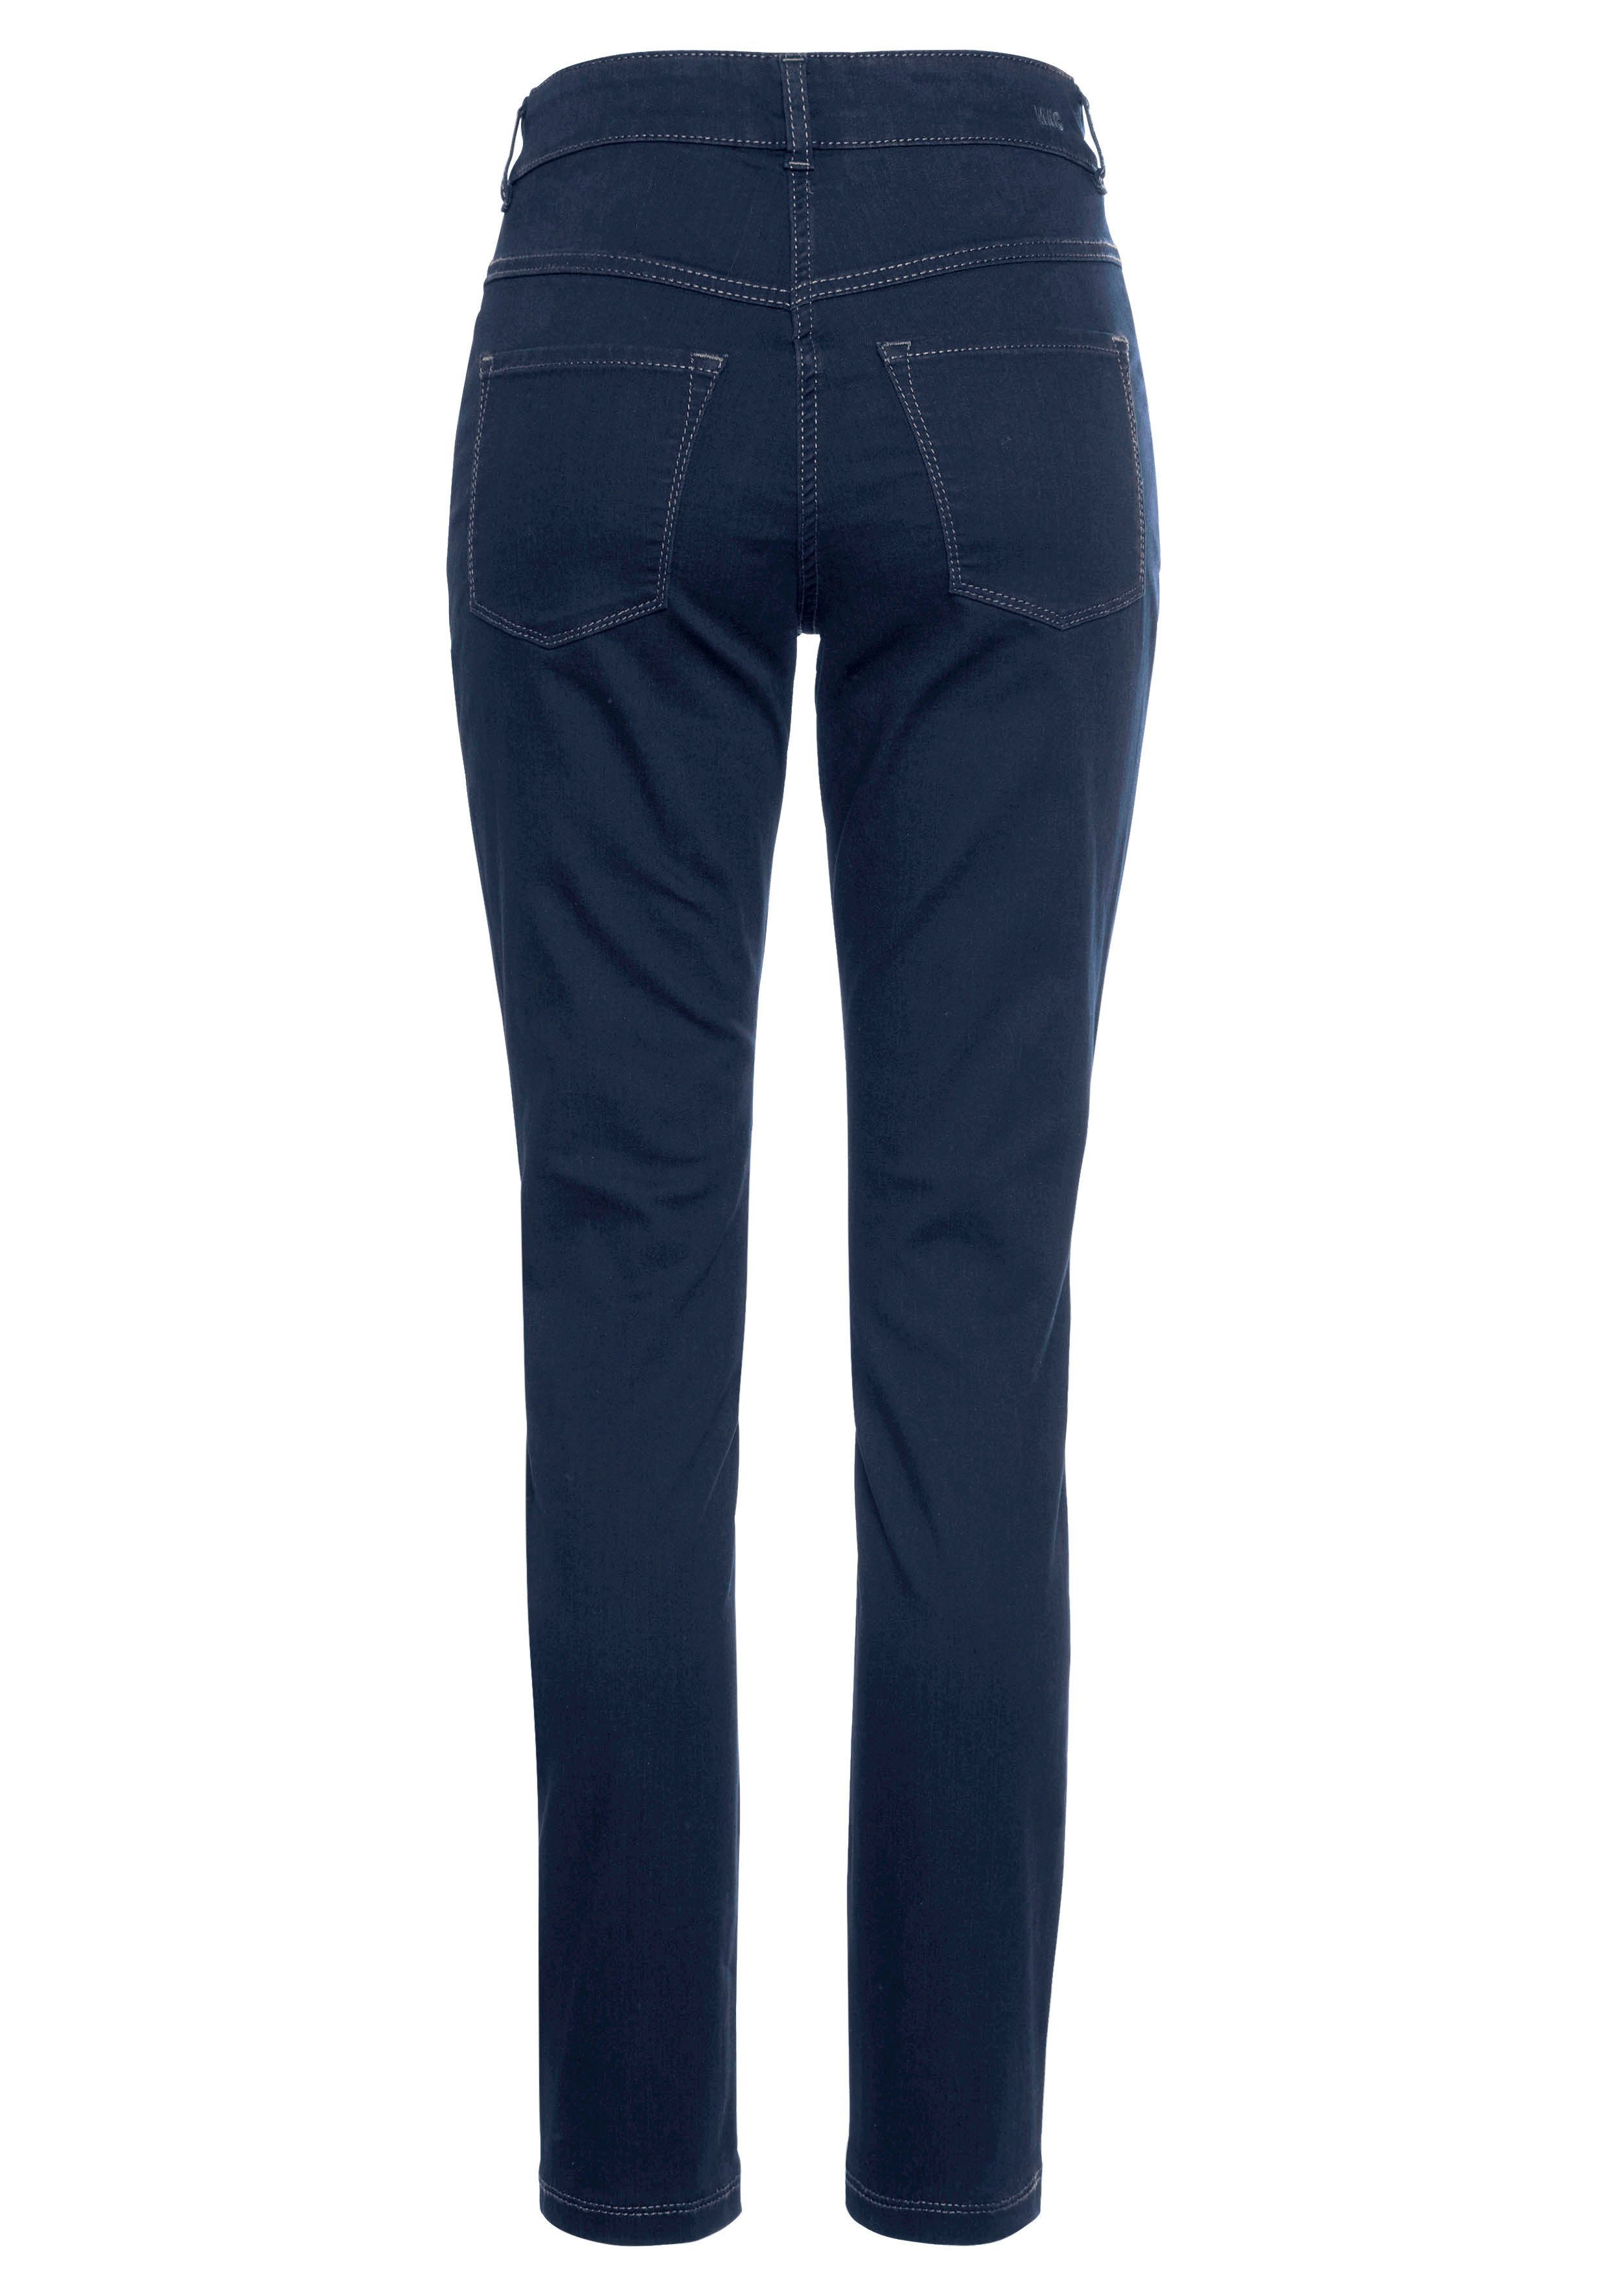 Power-Stretch wash new ganzen Qualität bequem Hiperstretch-Skinny den sitzt Tag MAC basic dark Skinny-fit-Jeans blue